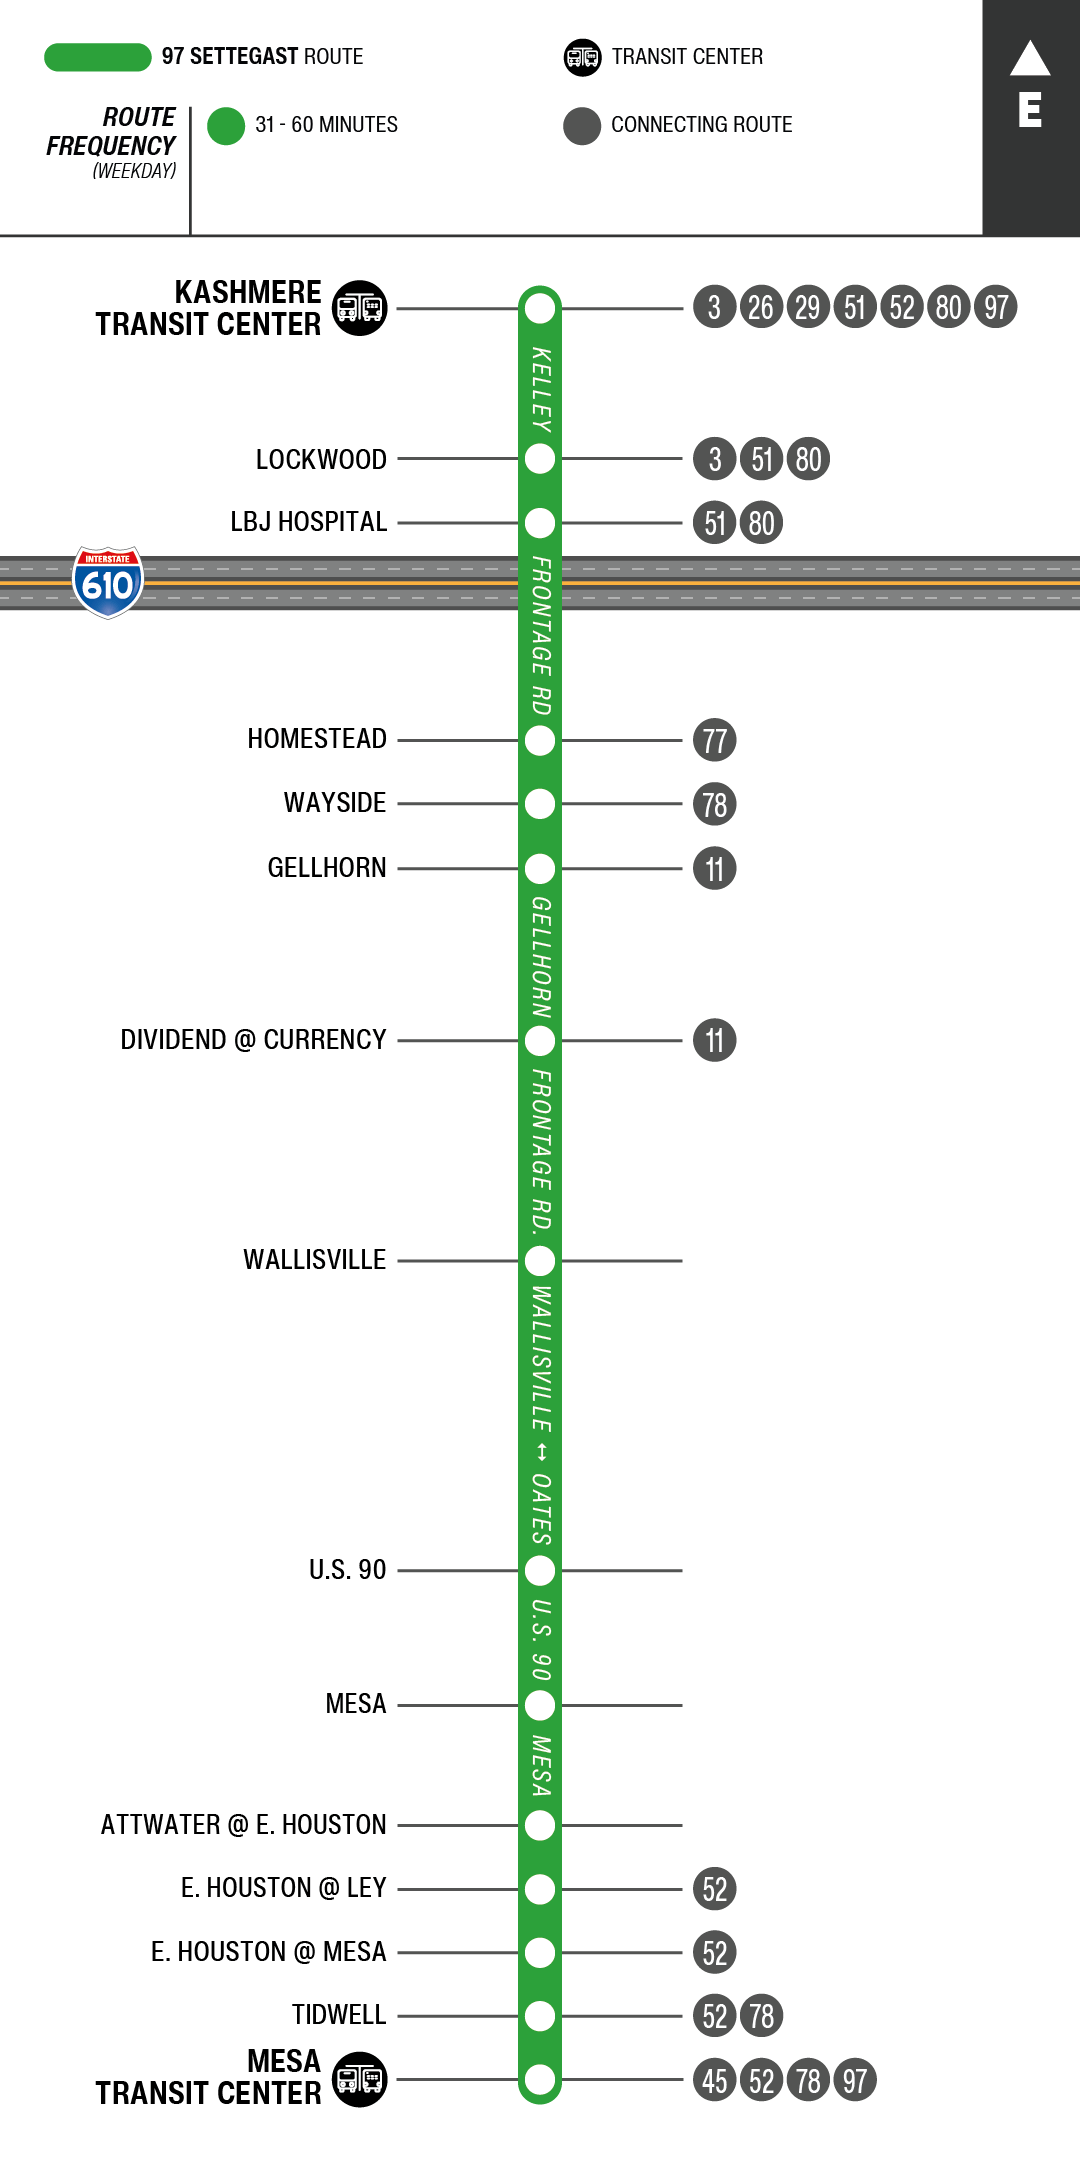 Route map for 97 Settegast bus